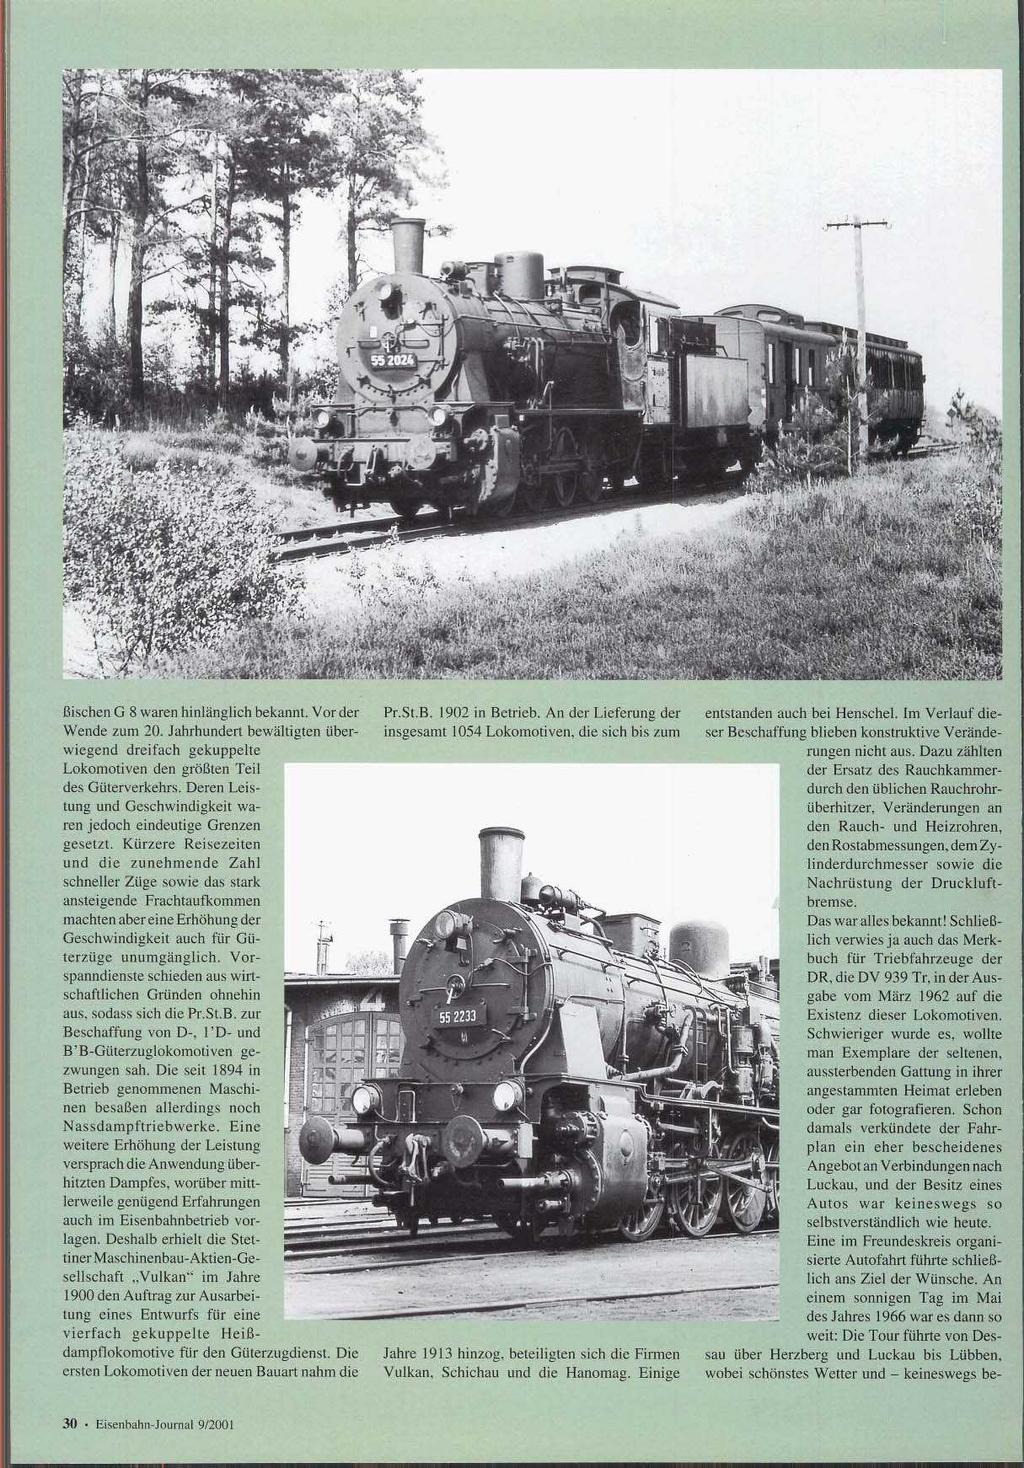 Wende zum 20. Jahrhundert bei wiegend dreifach gekuppelte Lokomotiven den größten Teil des Güterverkehrs. Deren L 1 tung und Geschwindigkeit ren jedoch eindeutige Gren gesetzt.